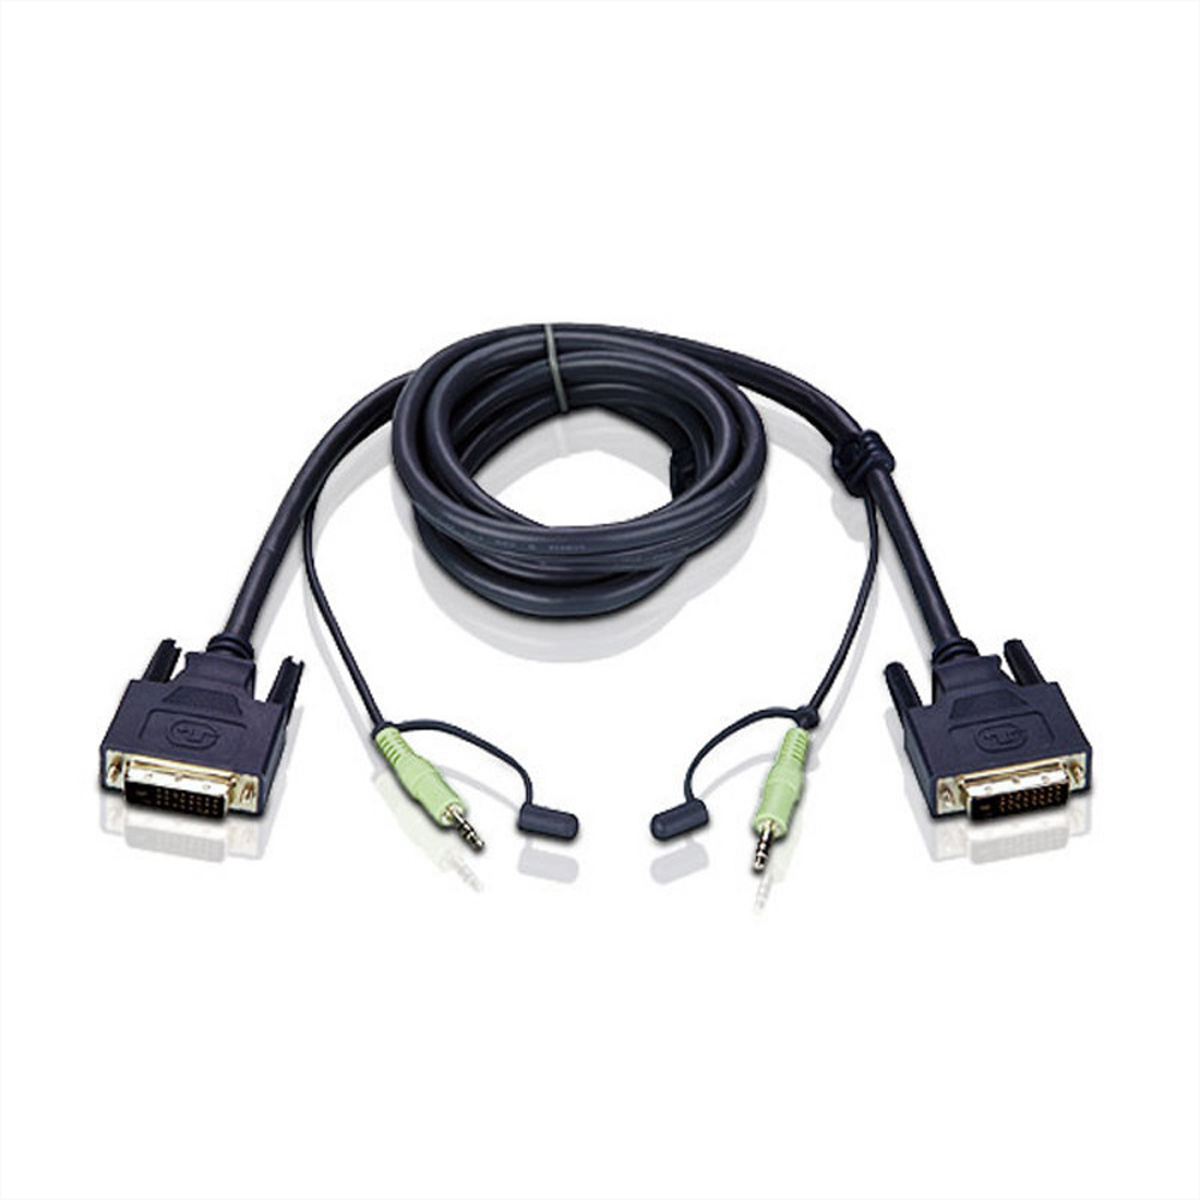 ATEN 2L-7D02V Kabel DVI-D Single Link KVM Kabel 1,8m , schwarz, 1,8 m